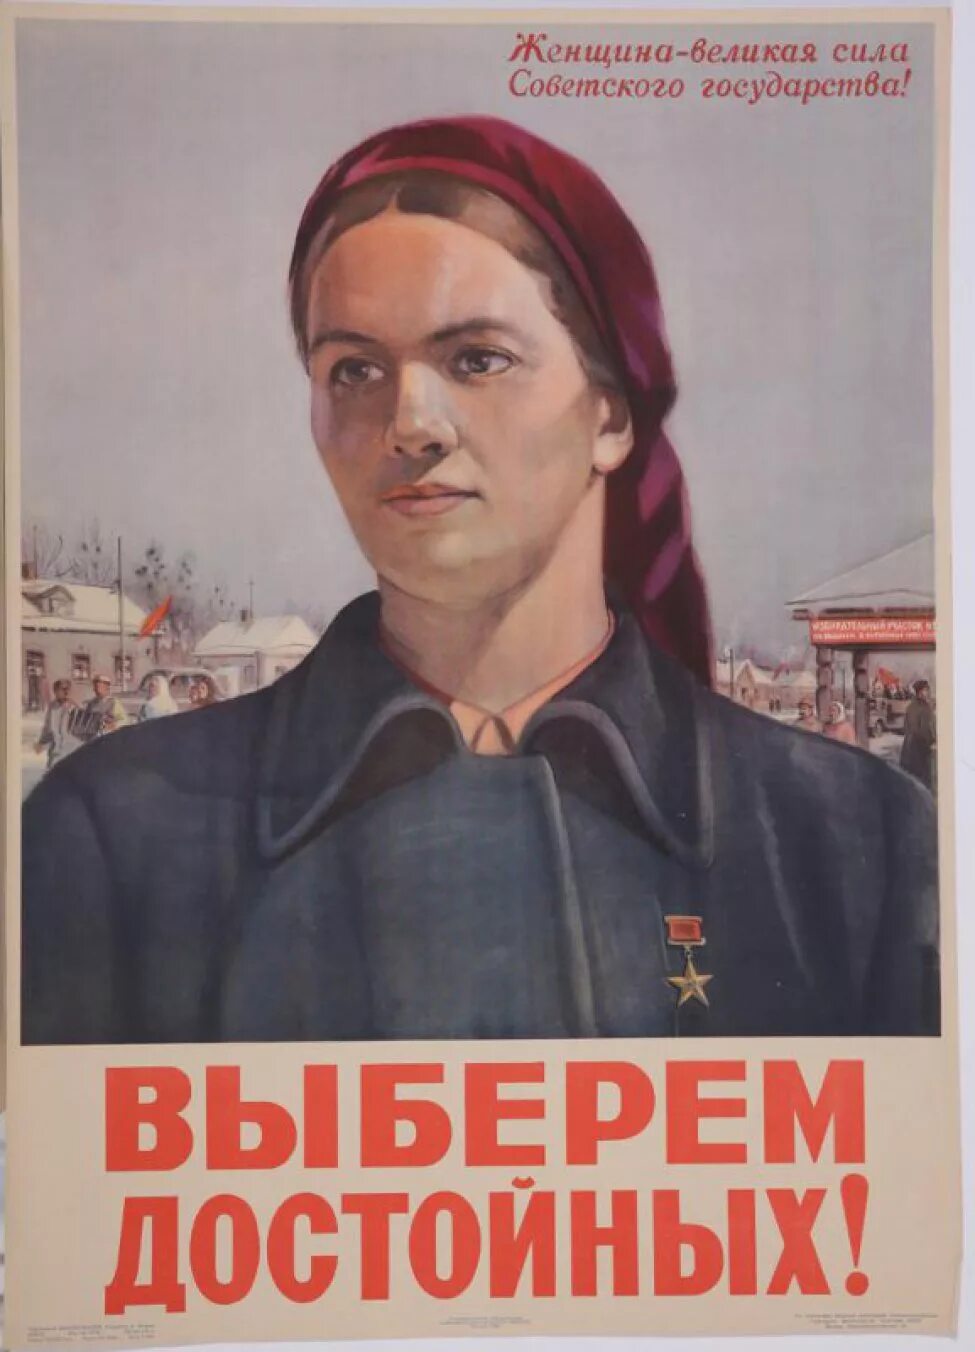 Ваша величайшая сила. Советские агитационные плакаты. Плакат выберем достойных. Советские плакаты про выборы. Предвыборные плакаты СССР.